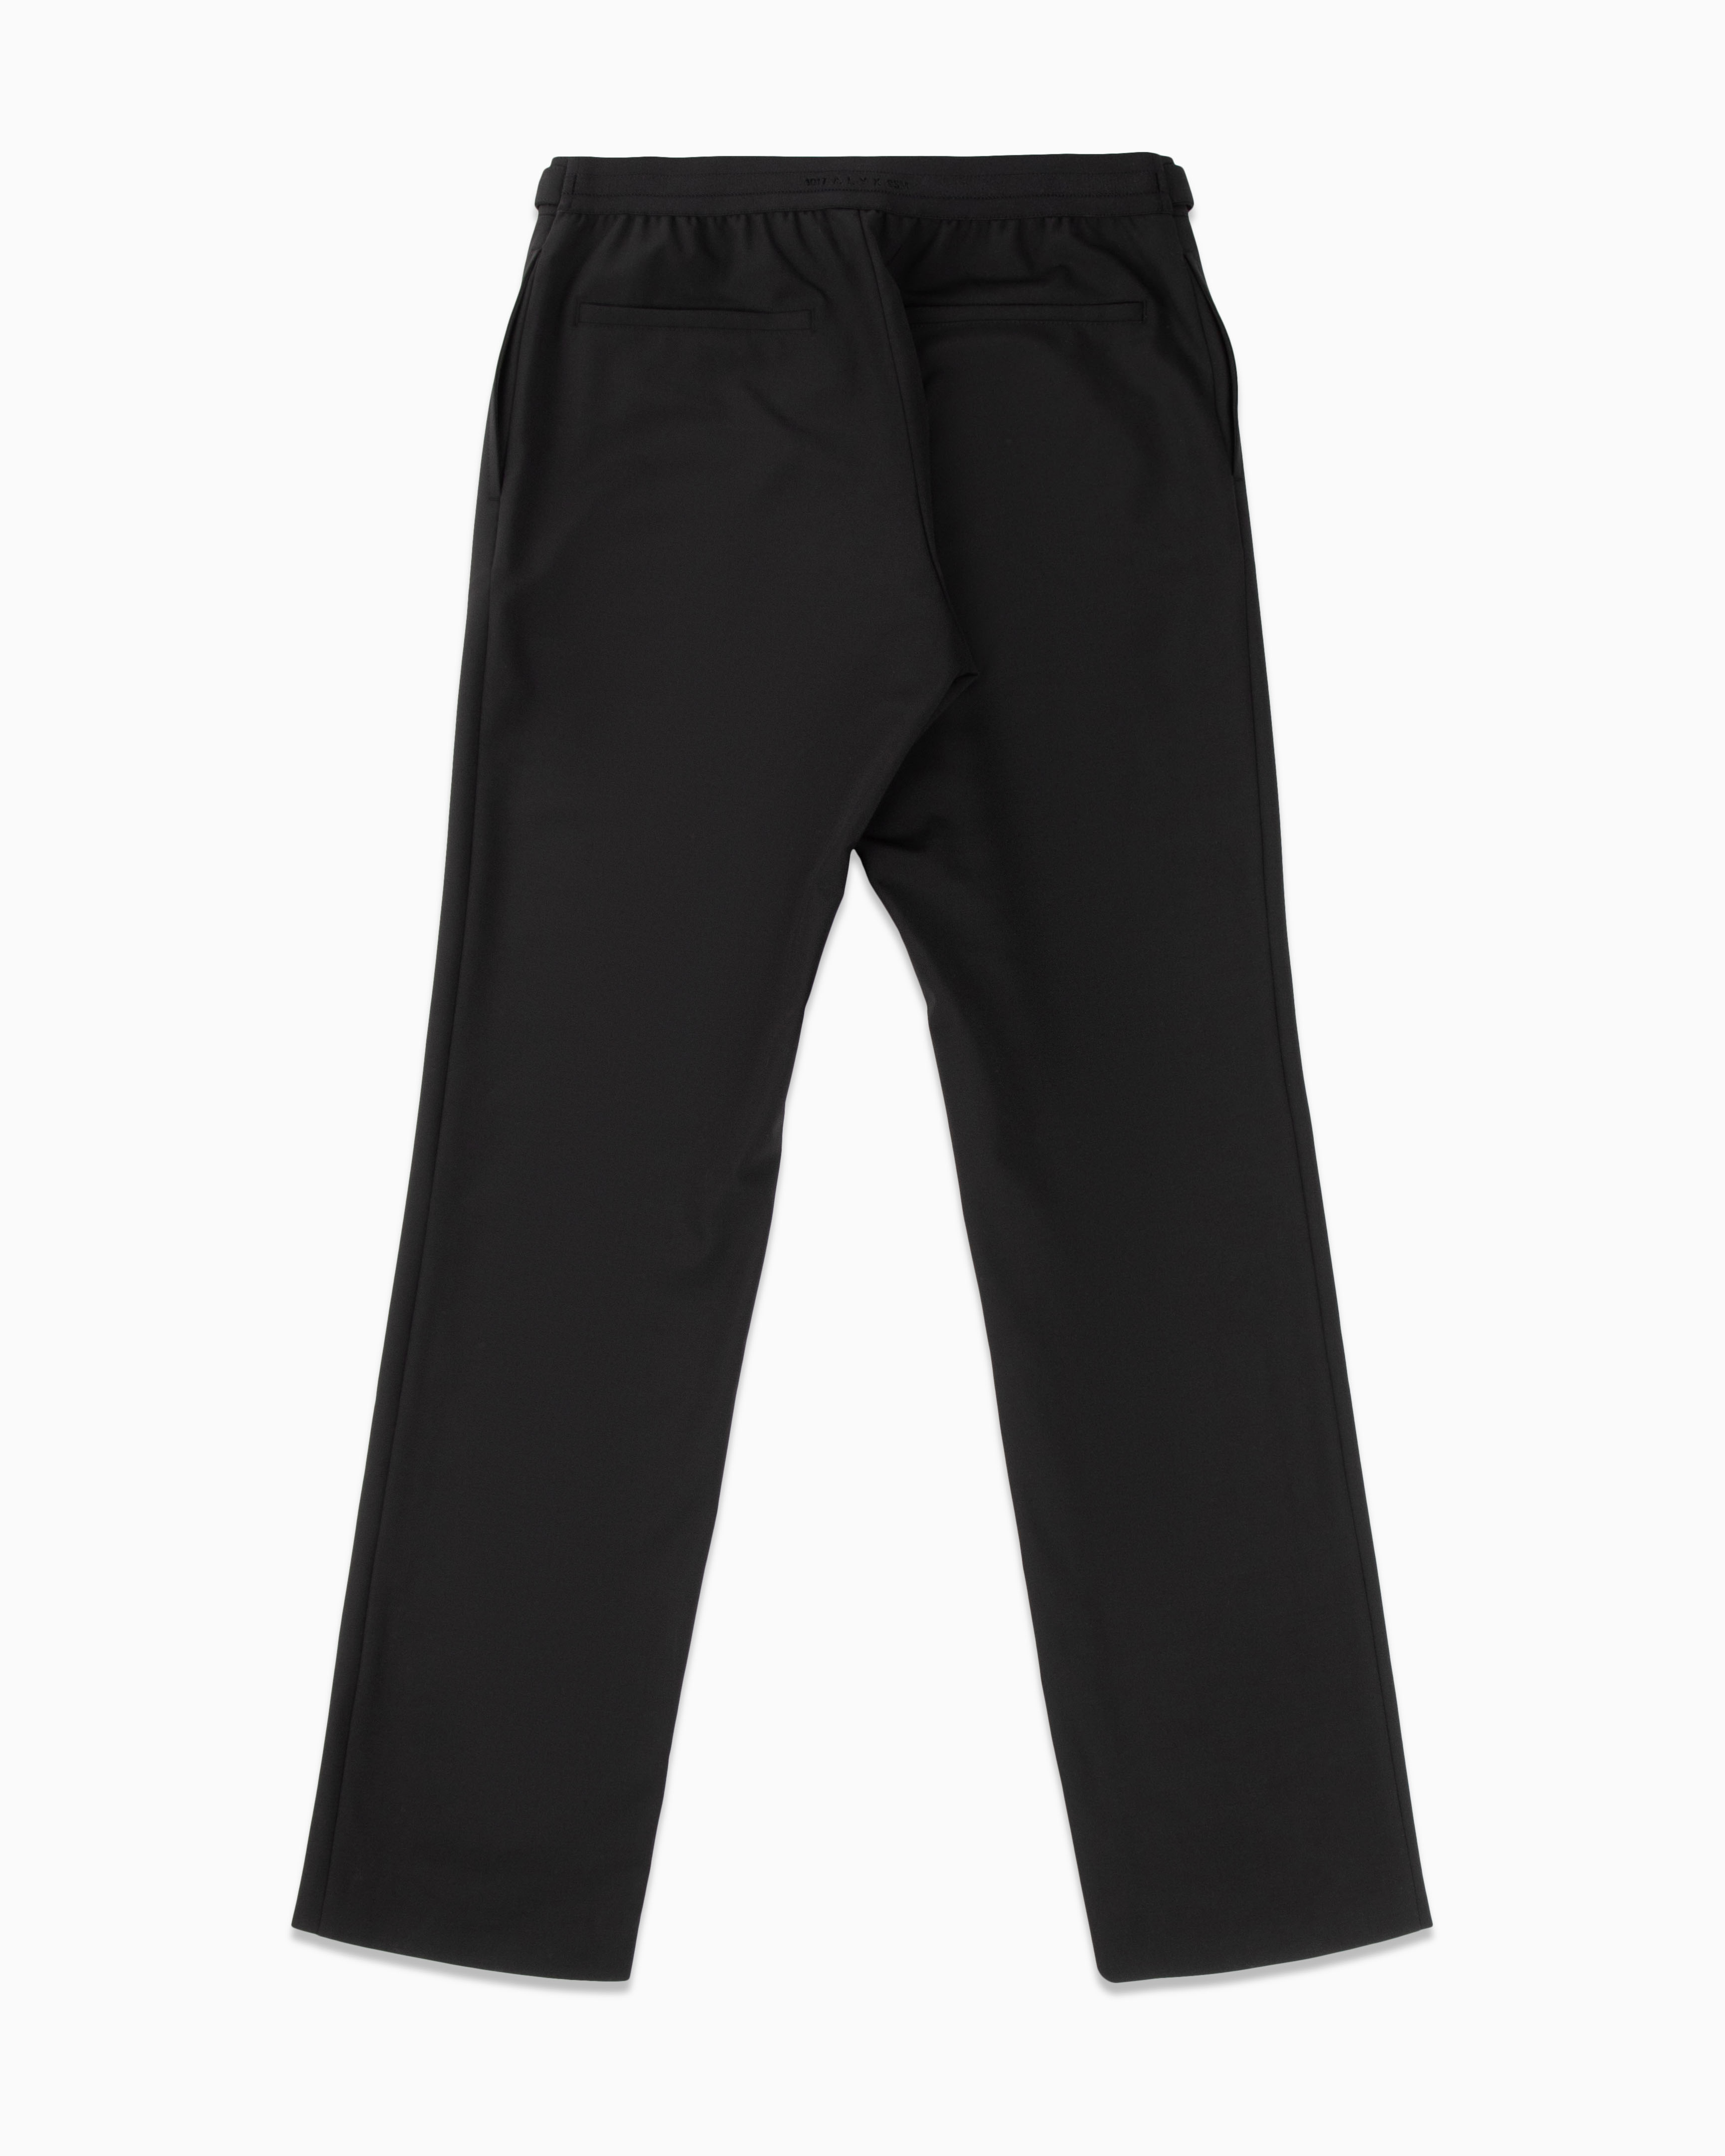 Metal Buckle Suit Pant 1017 ALYX 9SM Bottoms Suit Pants Black